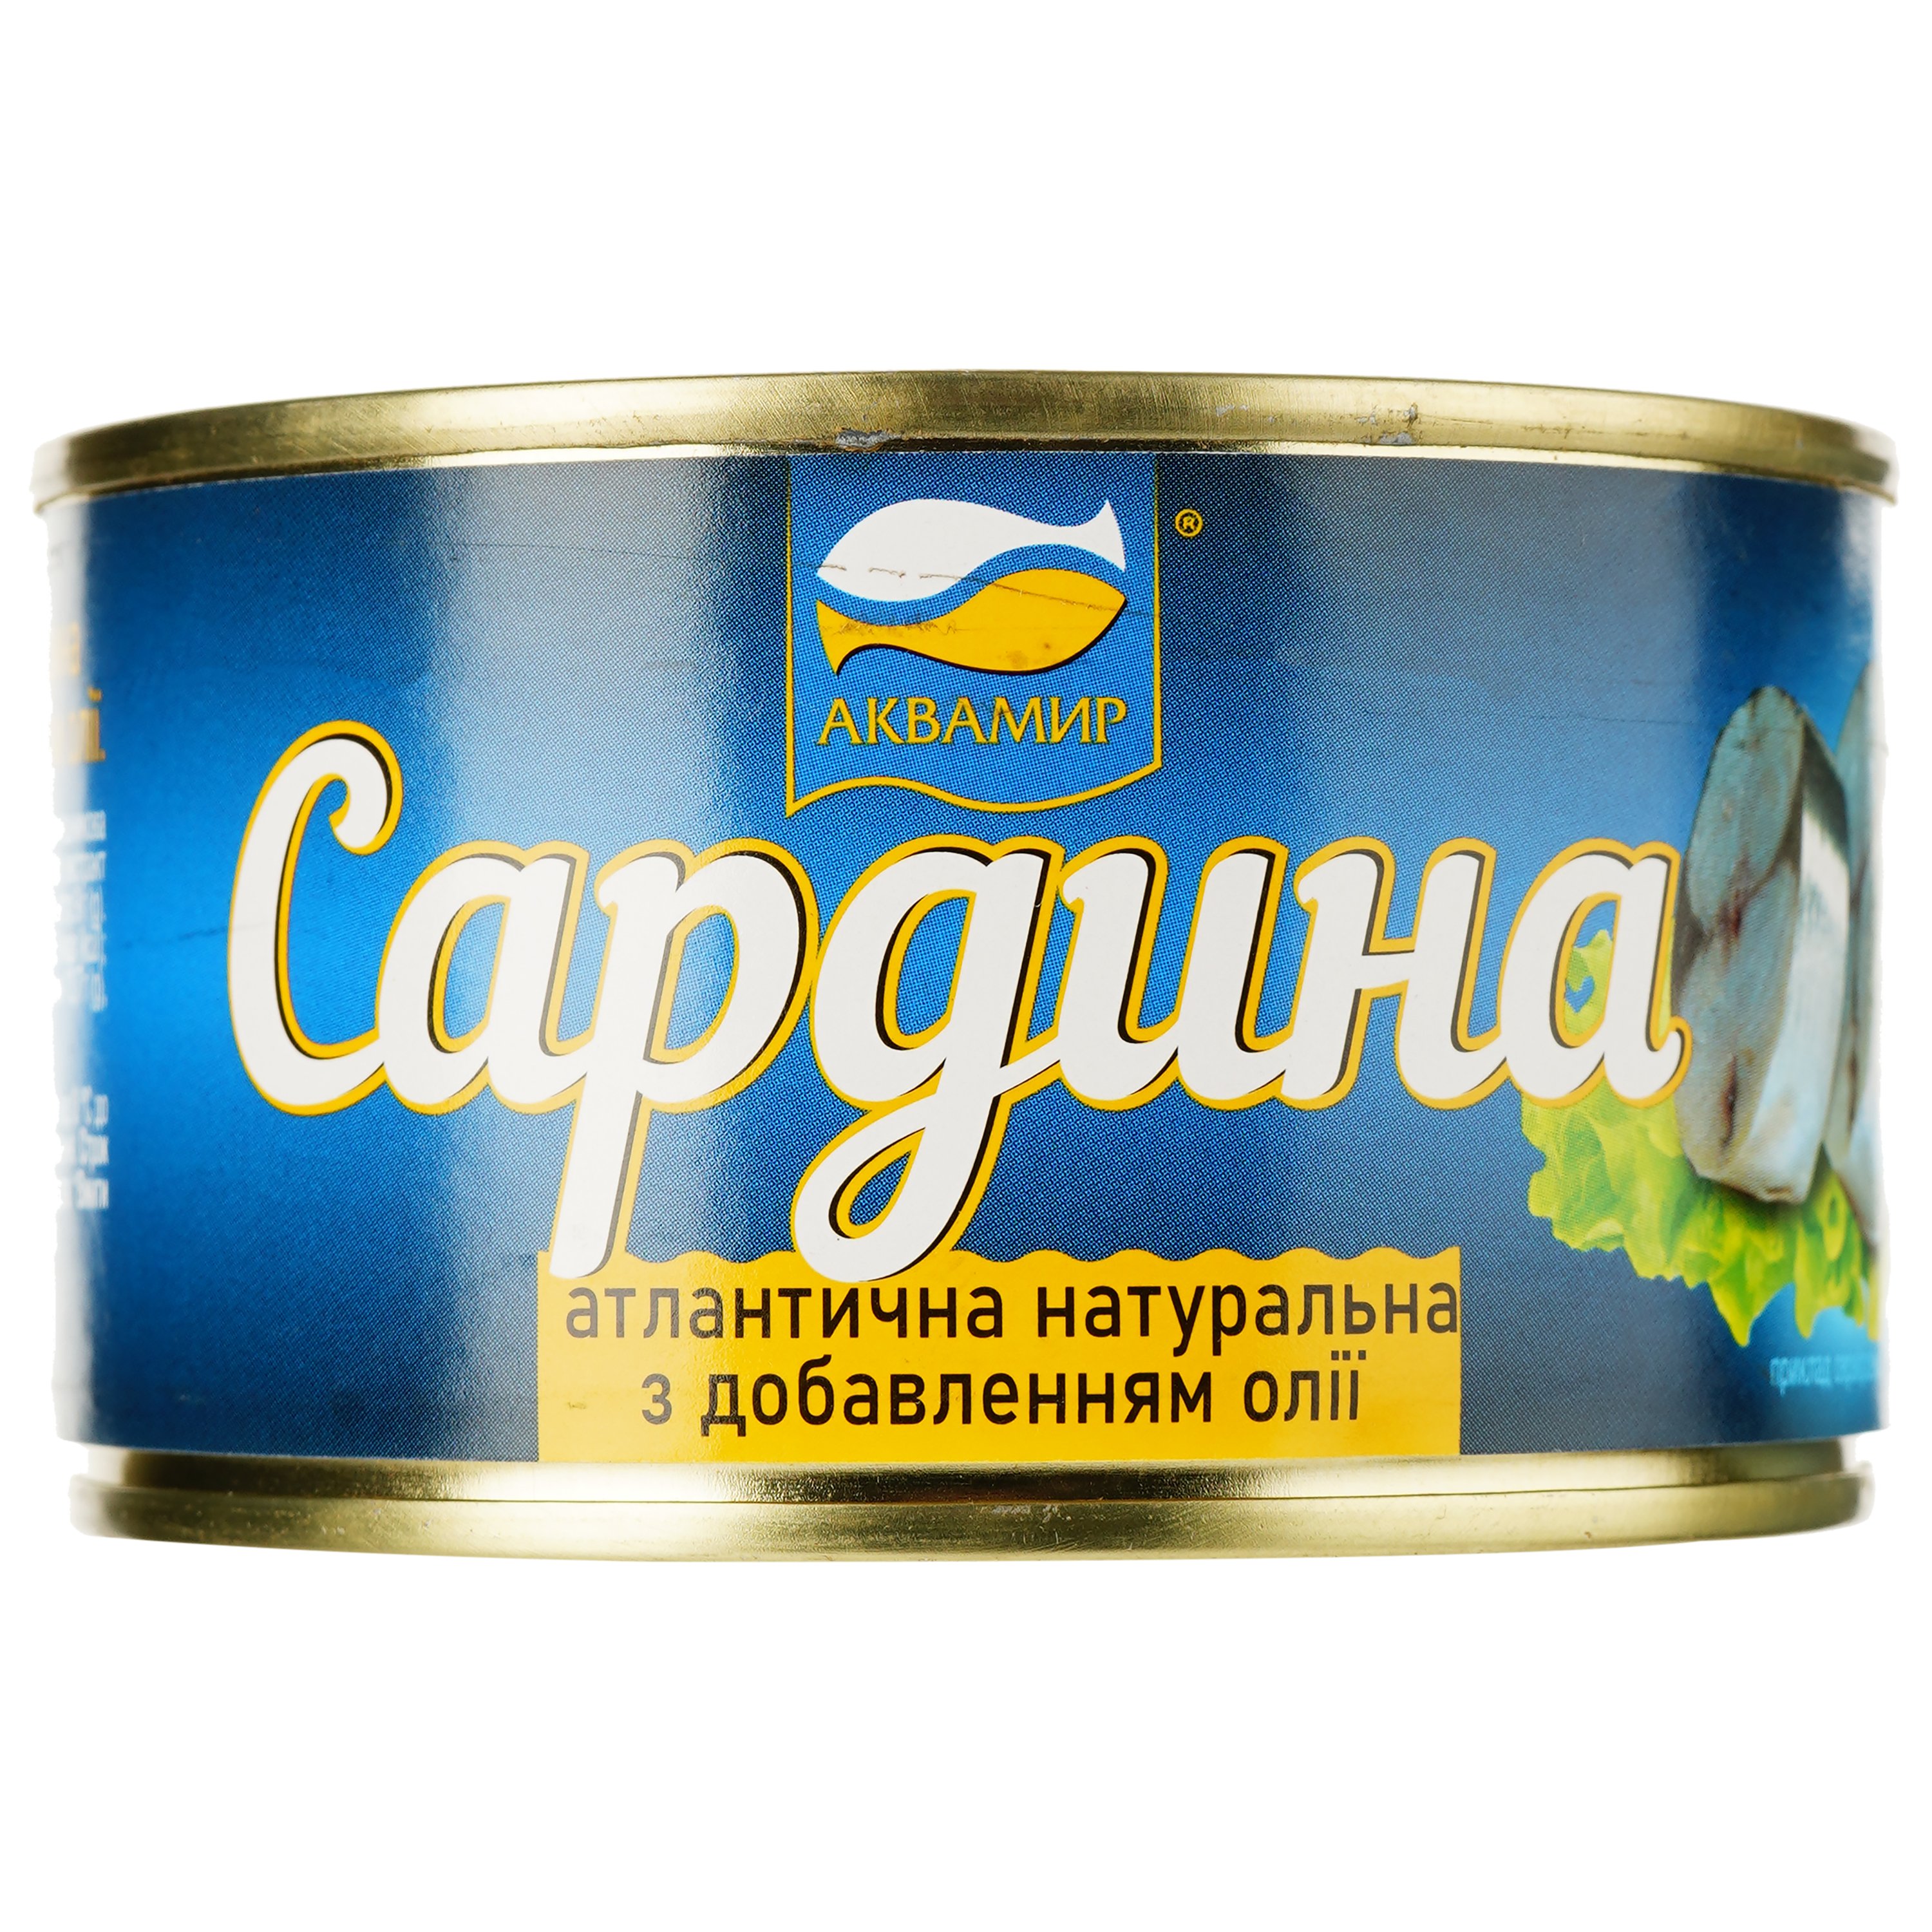 Сардина Аквамир атлантическая натуральная с добавлением масла 230 г (914676) - фото 1